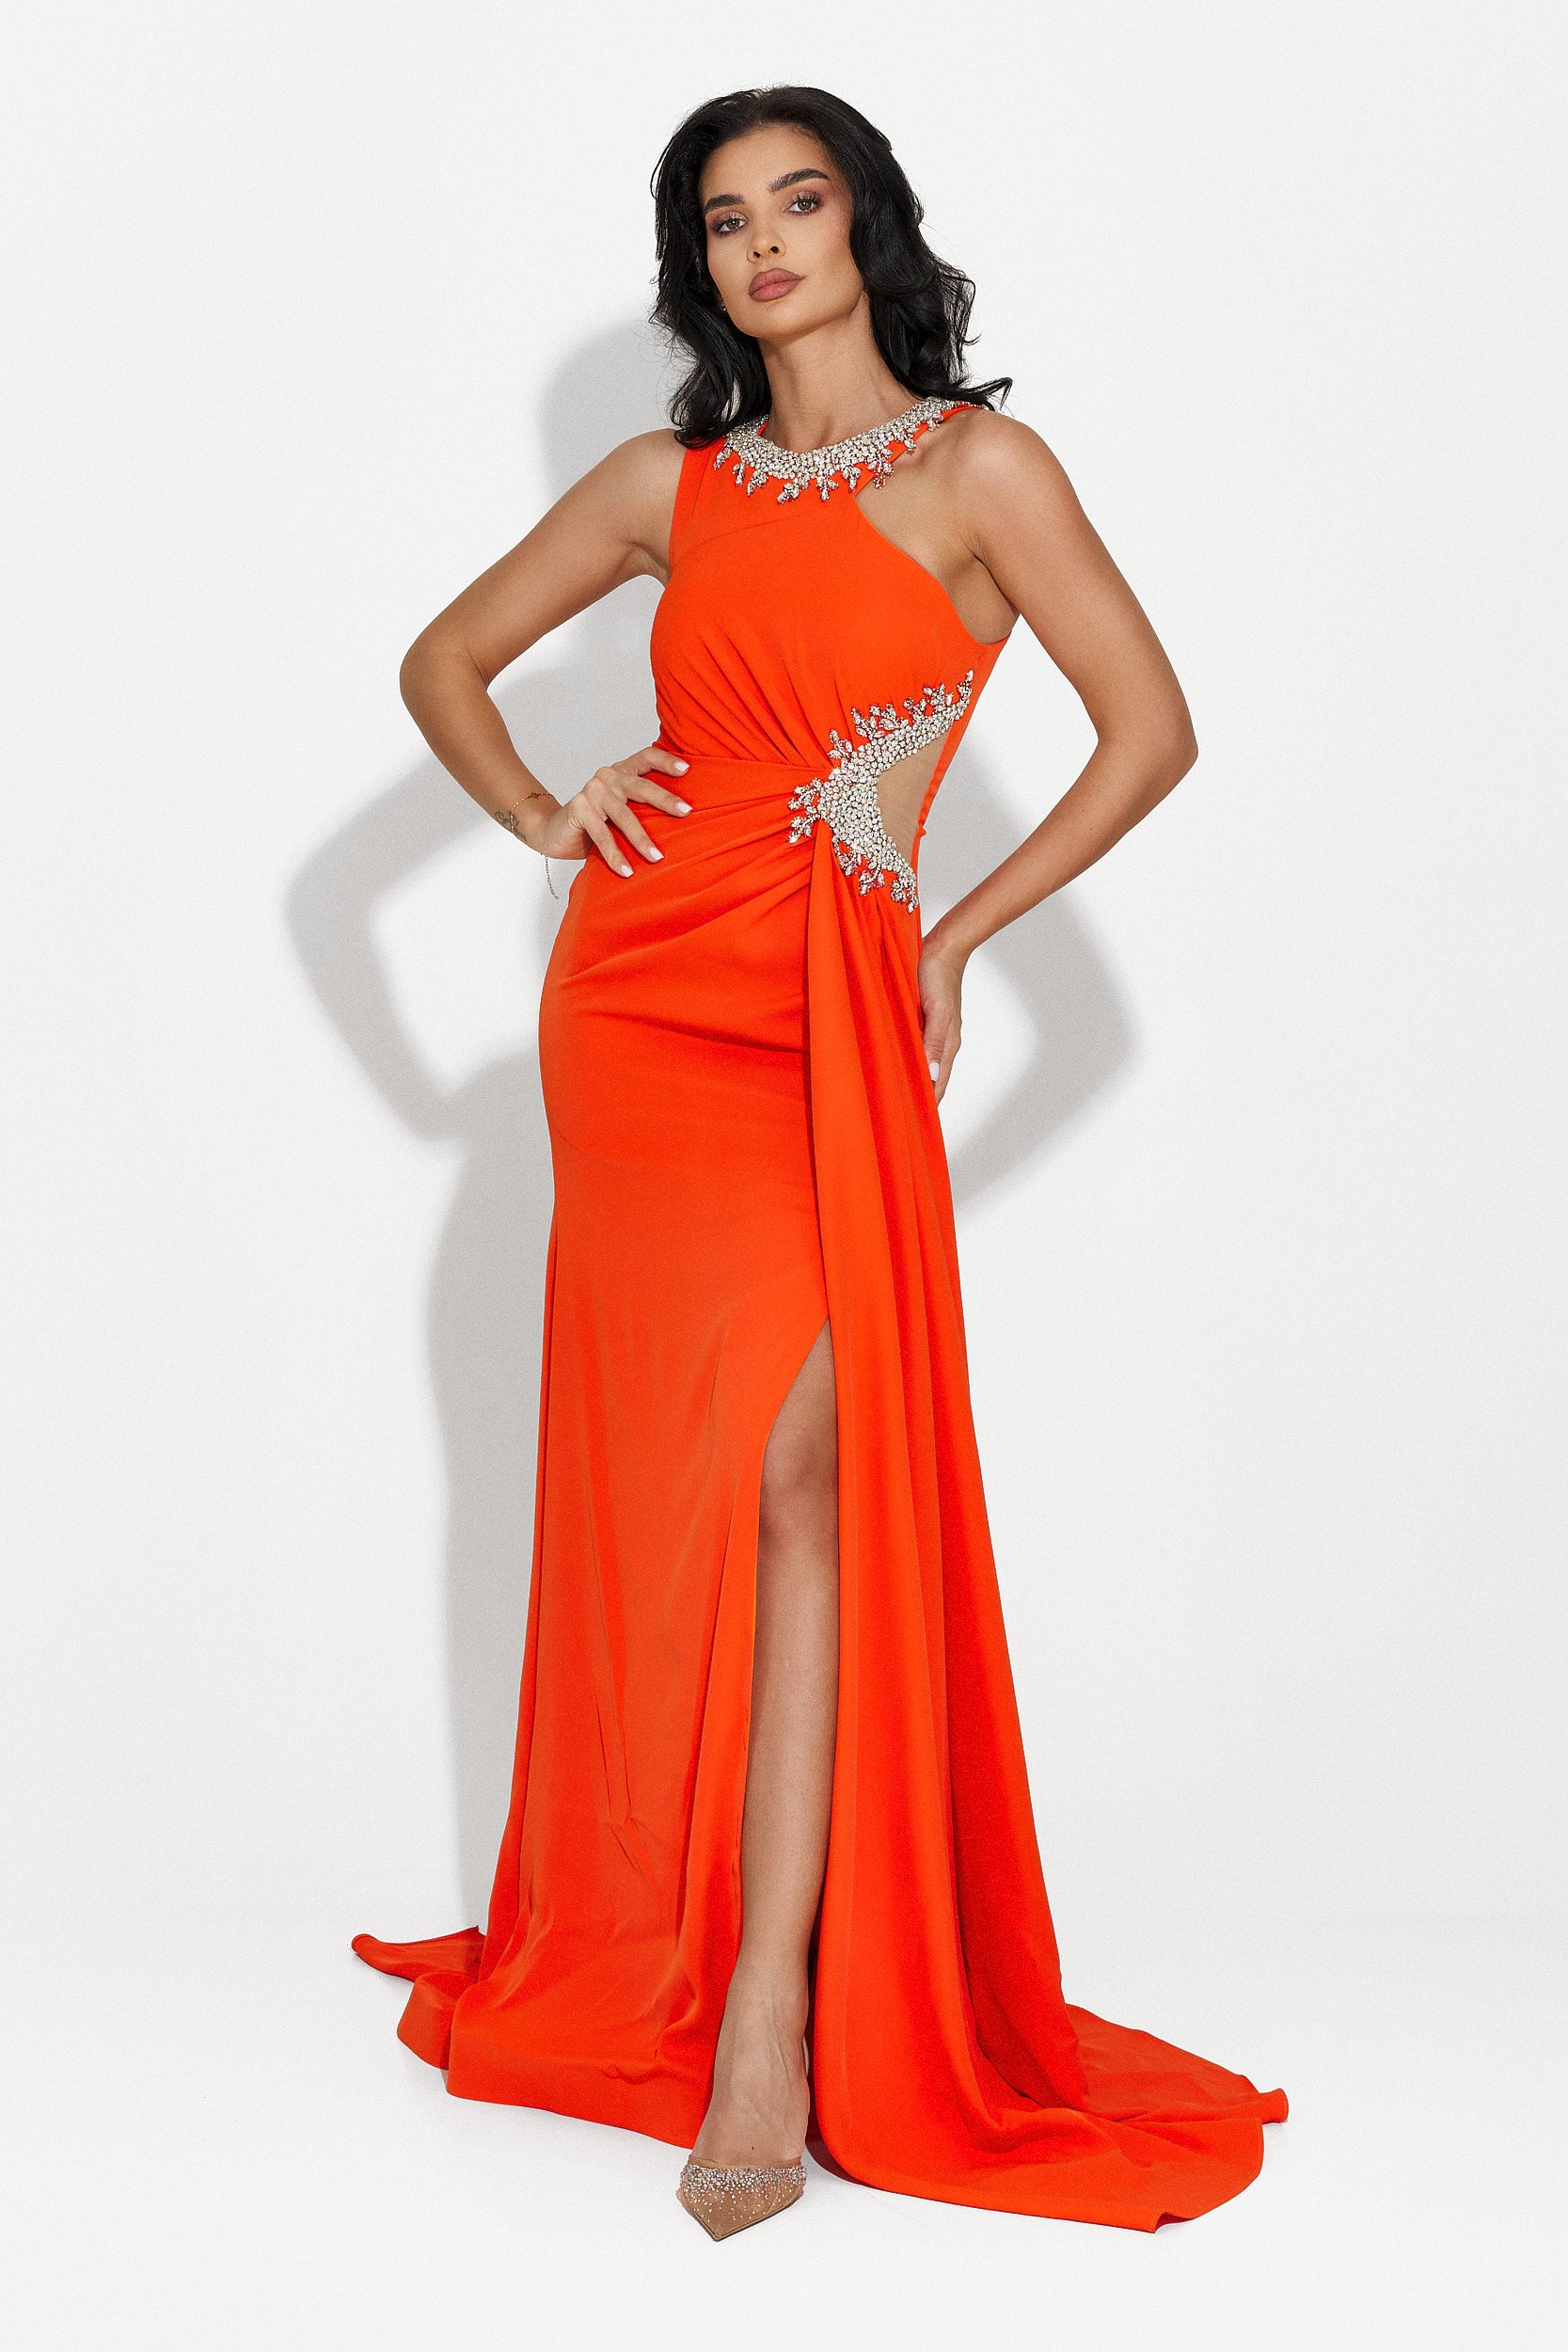 Alexea Bogas hosszú narancssárga női ruha